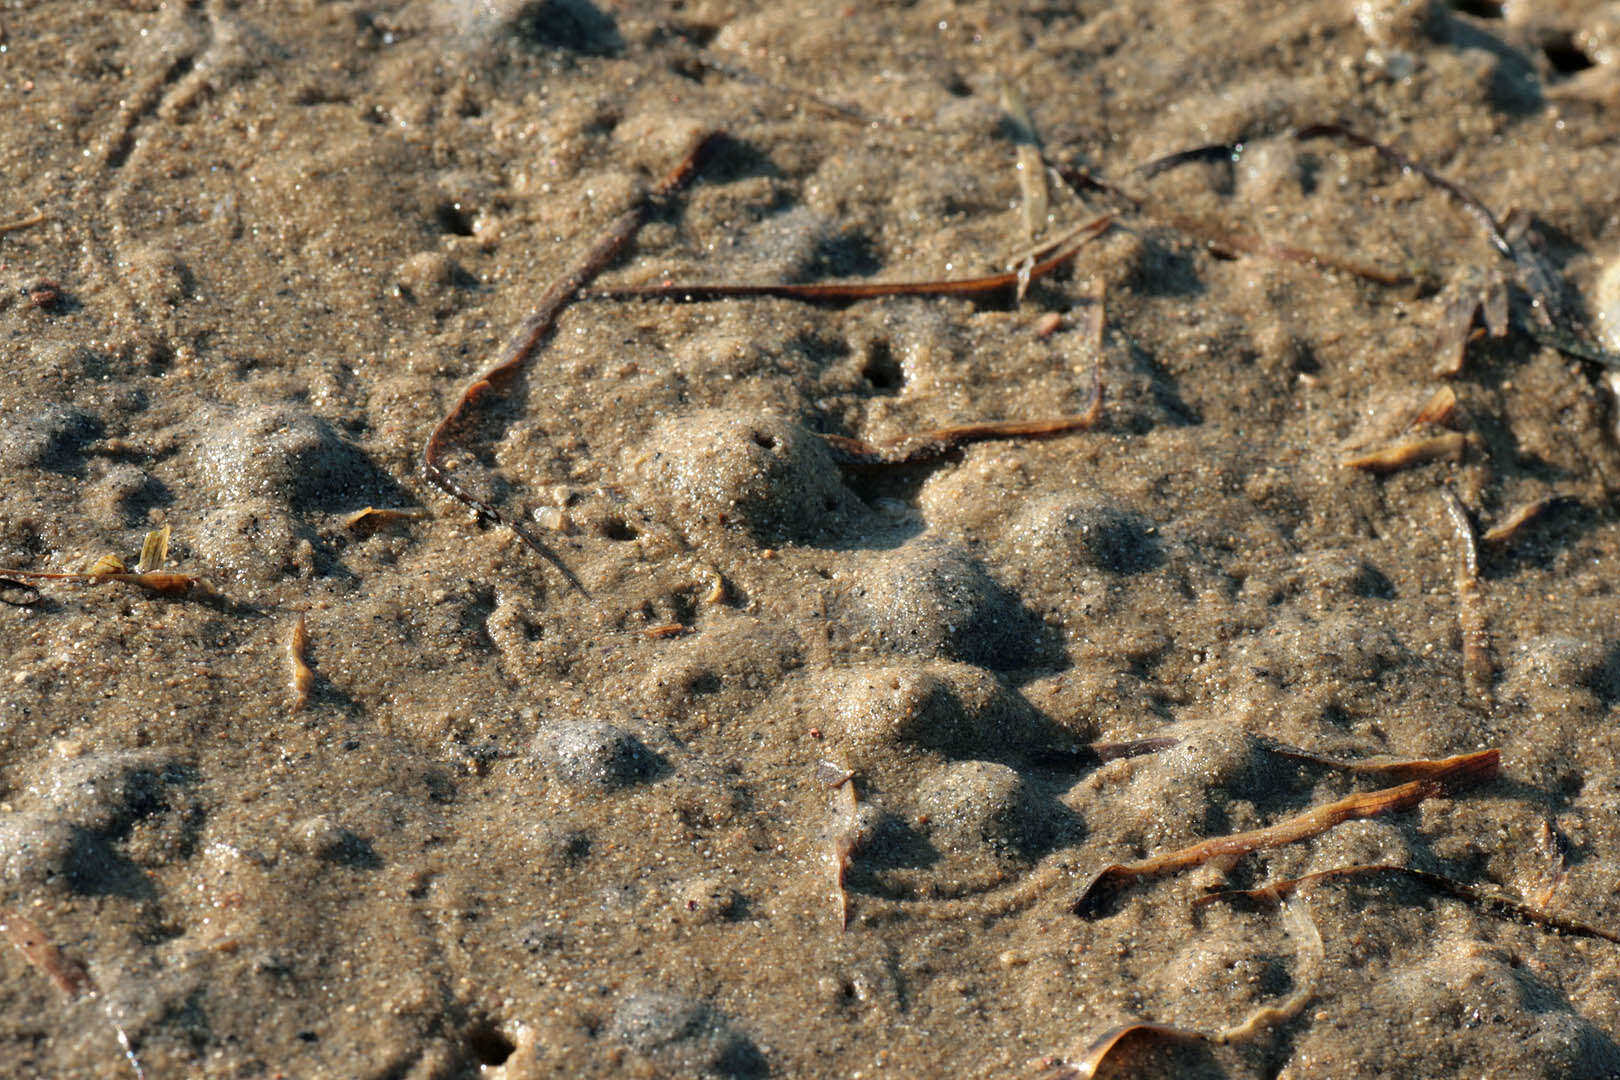 Image of European mud scud